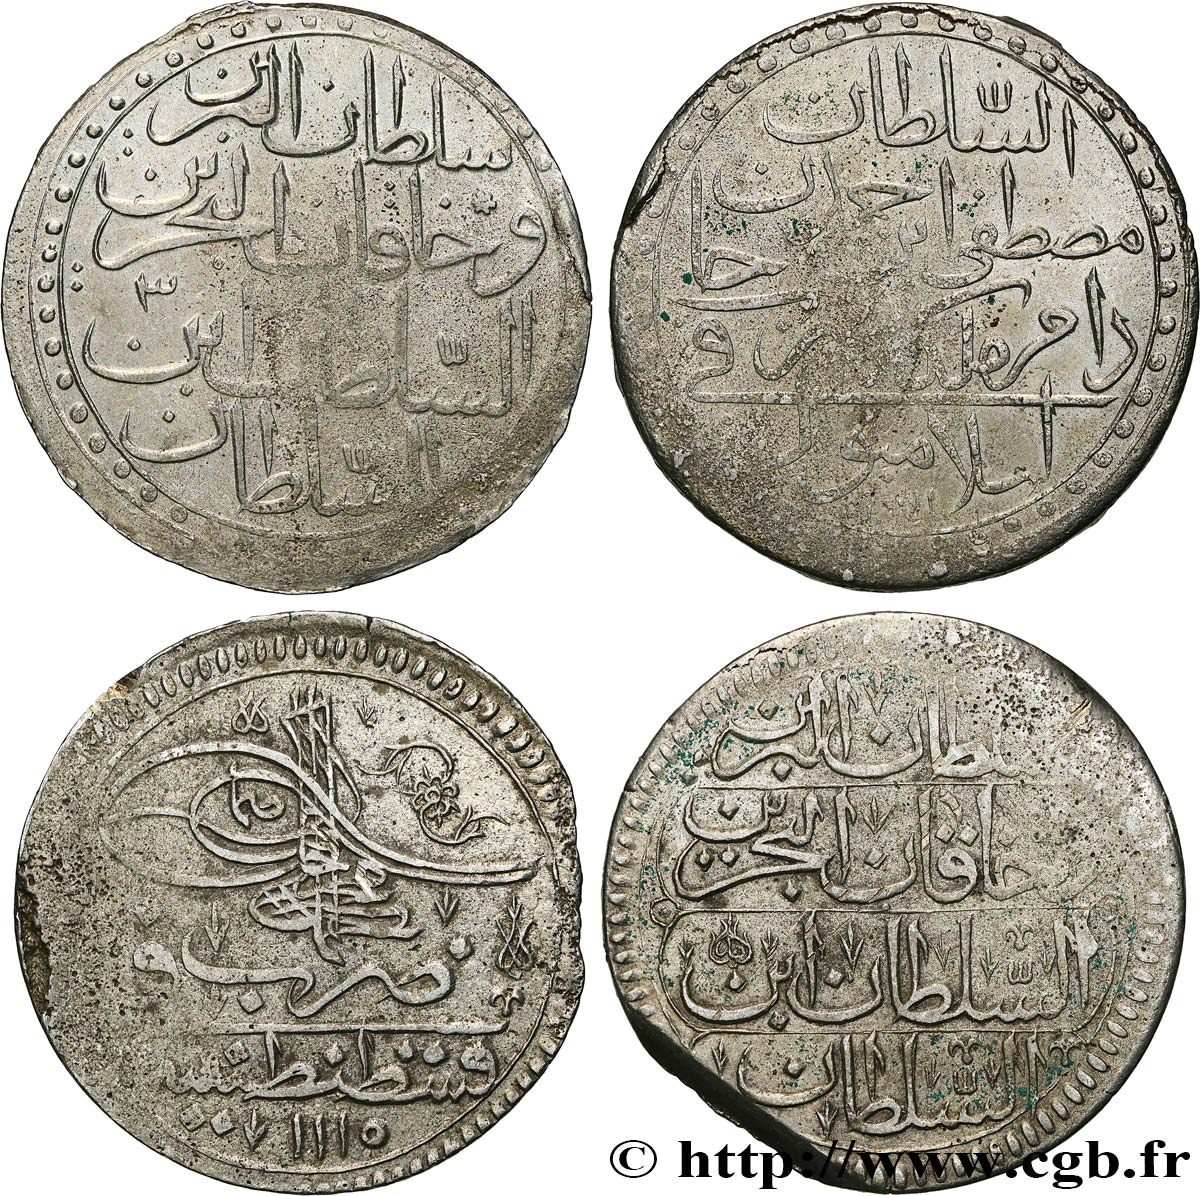 LOTS Lot de deux monnaies ottomanes n.d.  XF 